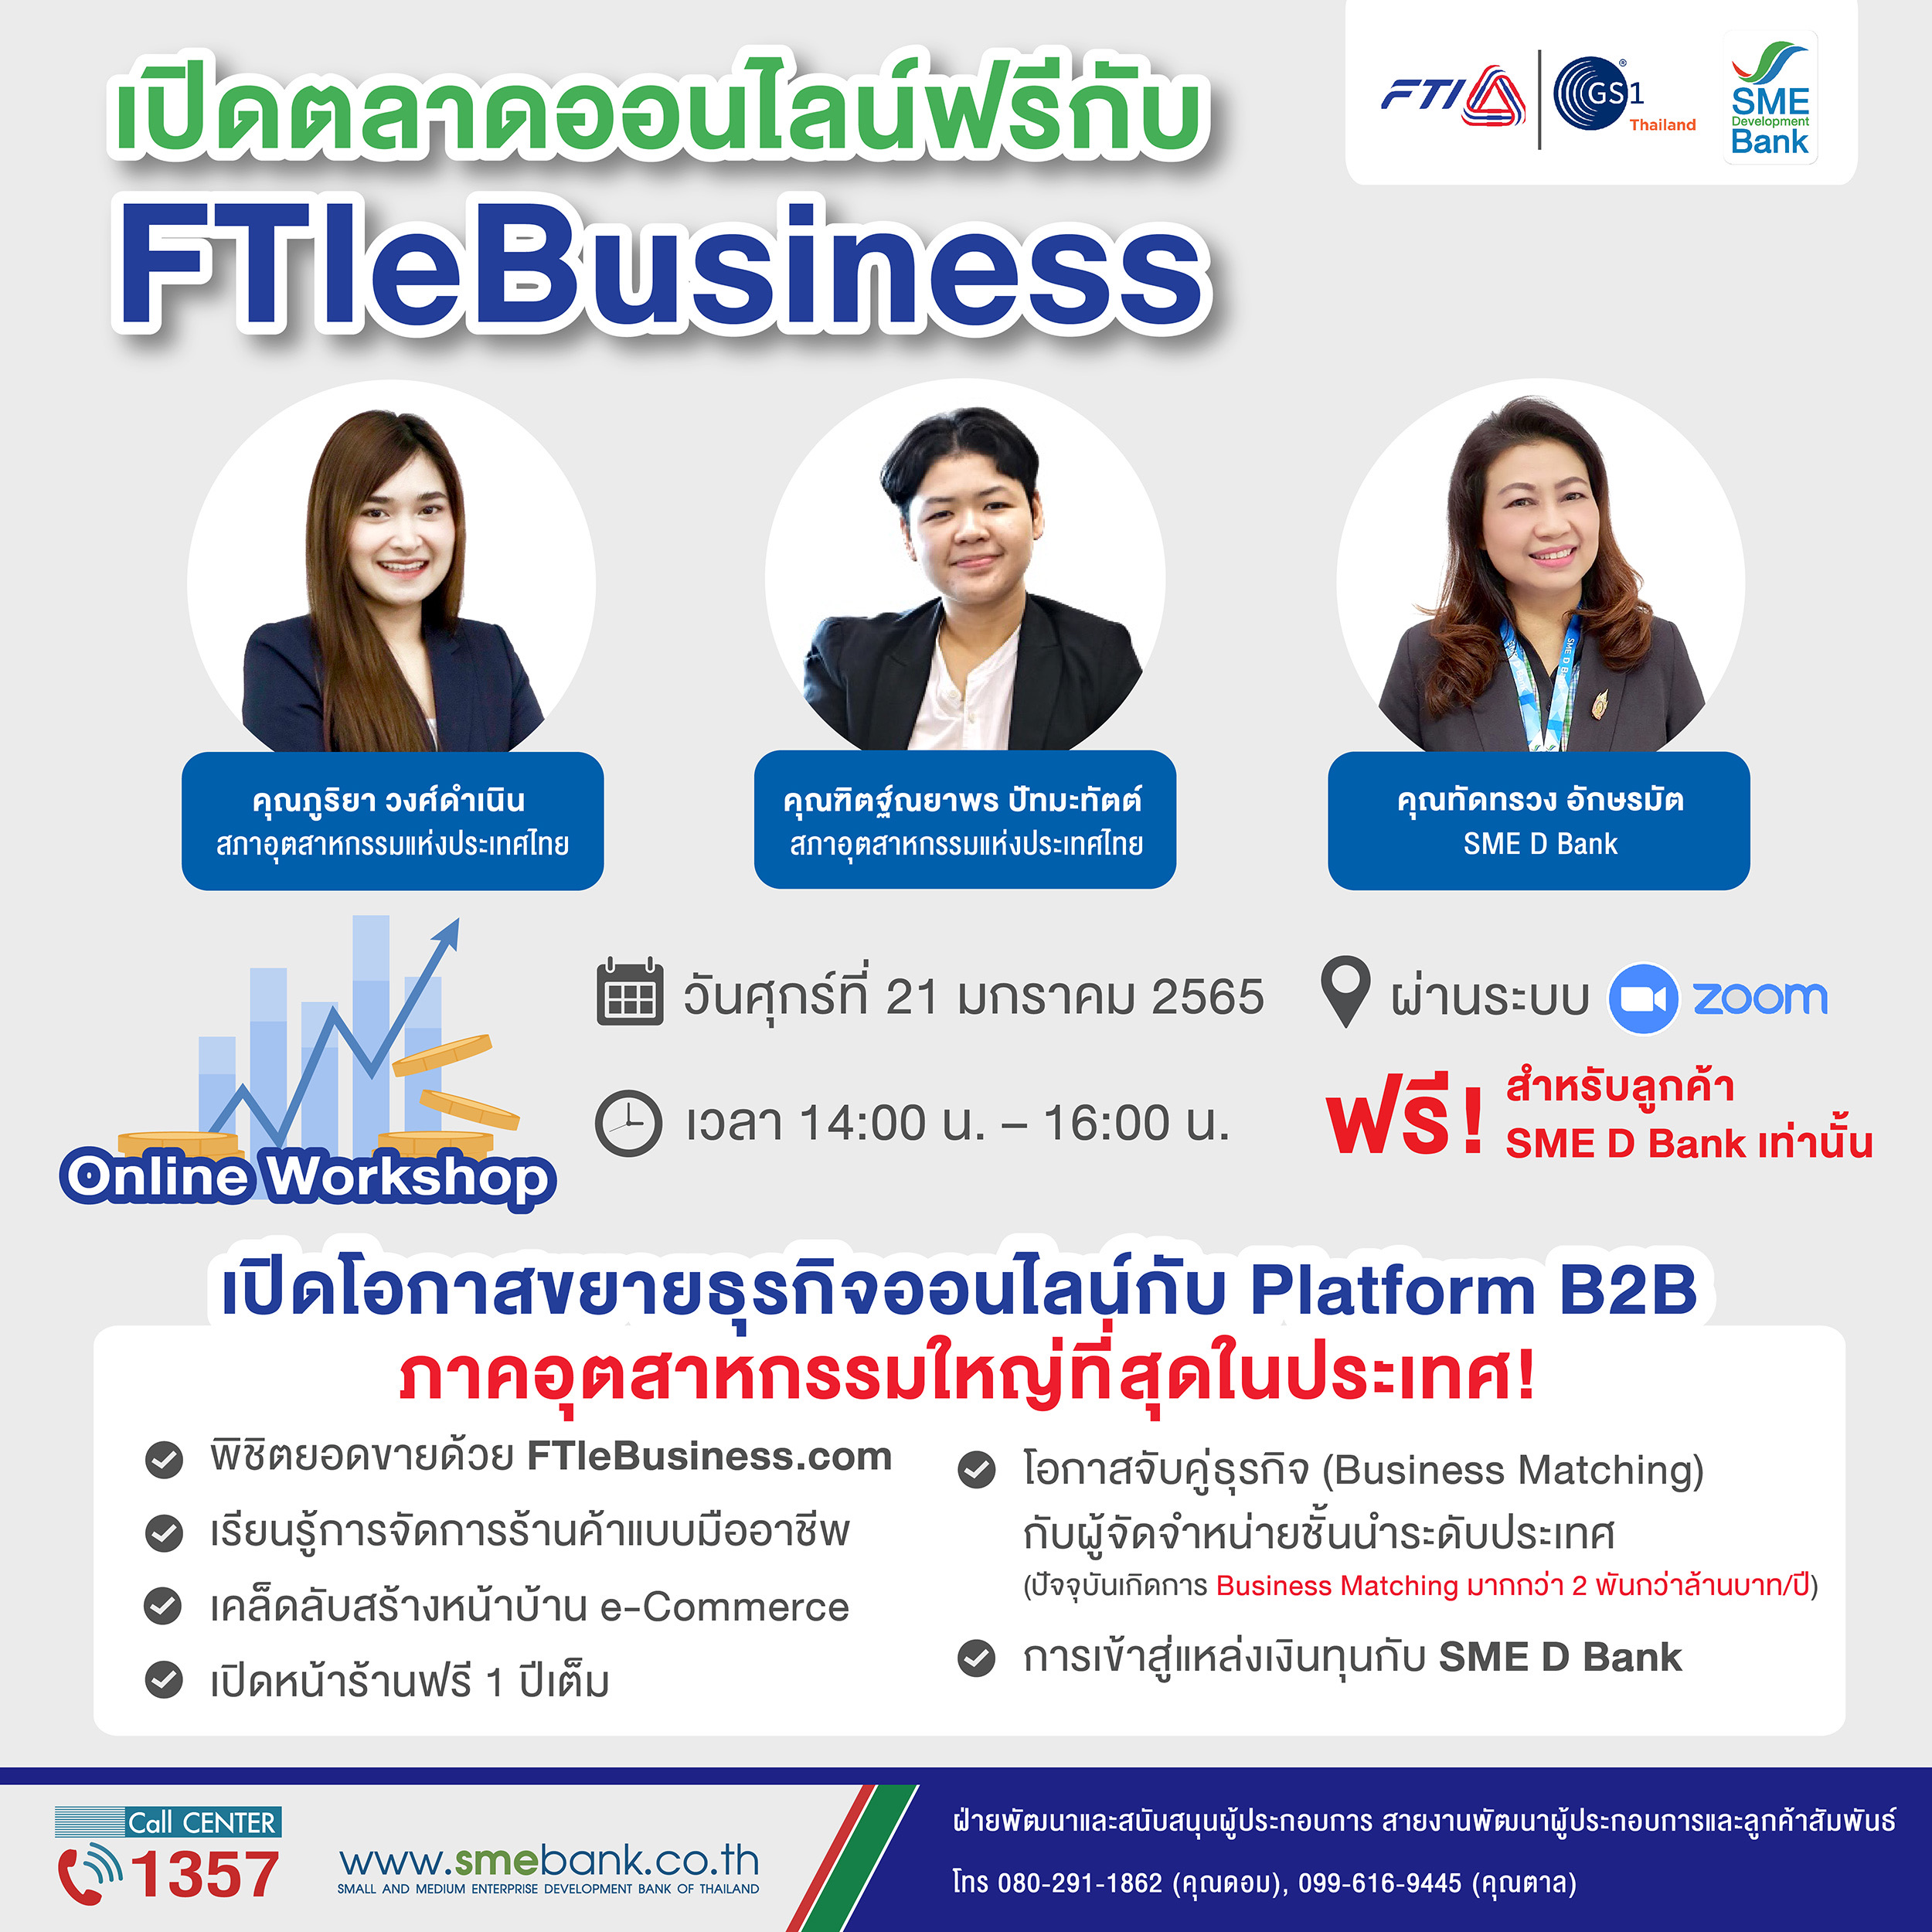 SME D Bank จับมือ ส.อ.ท. จัดกิจกรรมหนุนเอสเอ็มอีไทยเพิ่มรายได้ เปิดตลาดออนไลน์ฟรี กับFTIeBusiness’